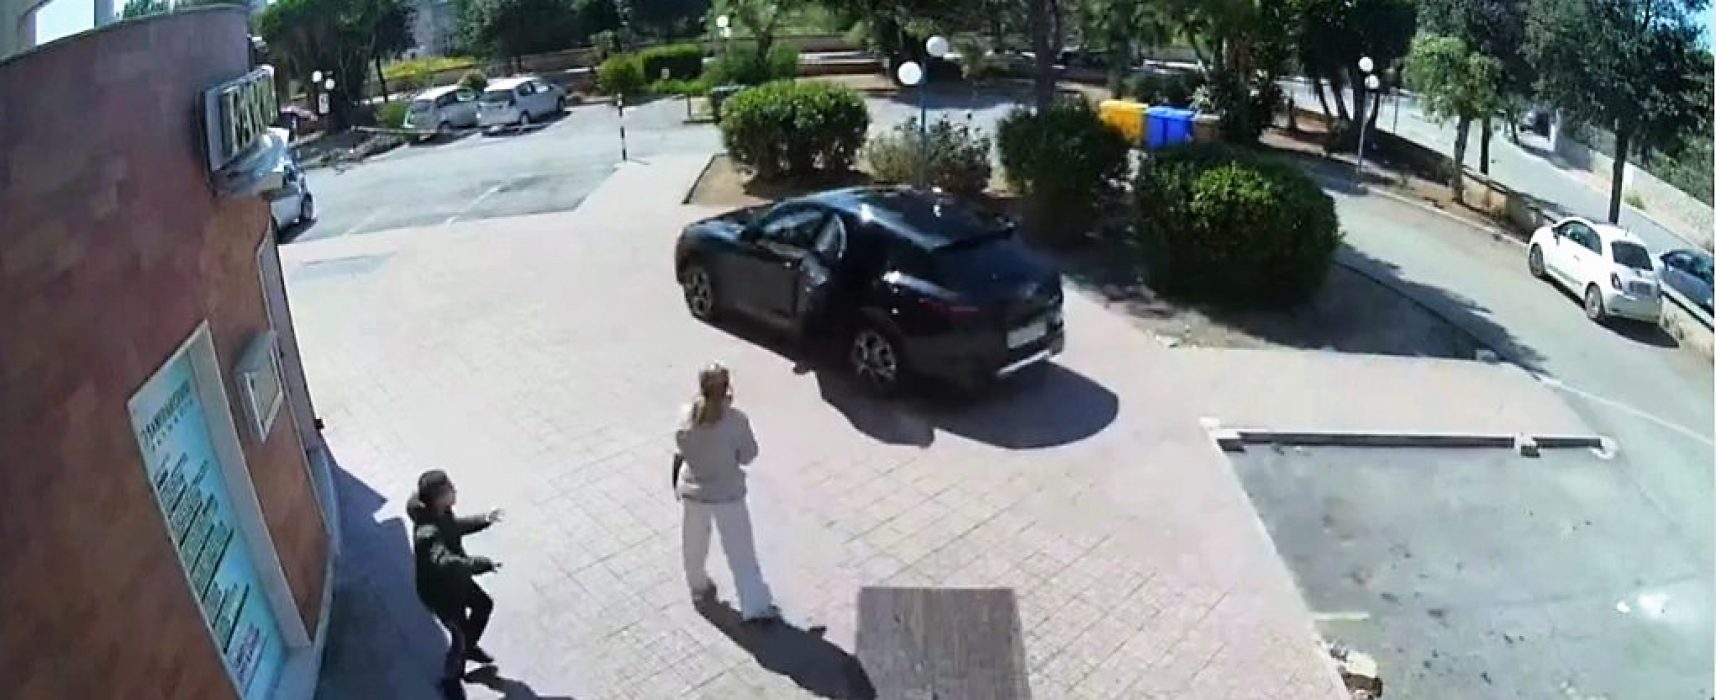 Rubano auto sotto gli occhi del proprietario: incredibile furto a Bisceglie / VIDEO